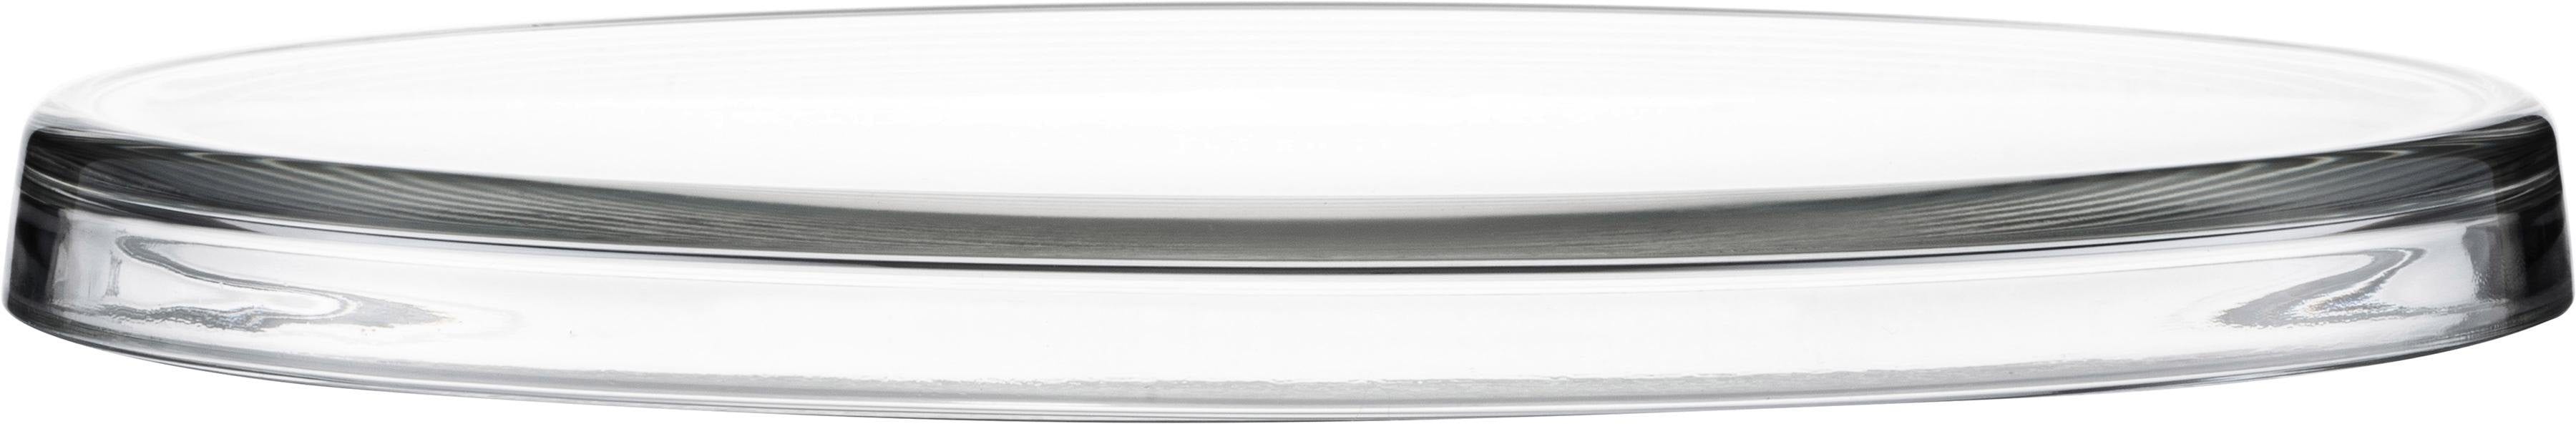 Eisch Tortenplatte, satiniertes Kristallglas, Ø 31 cm farblos Tortenplatte Backhelfer Kochen Backen Haushaltswaren